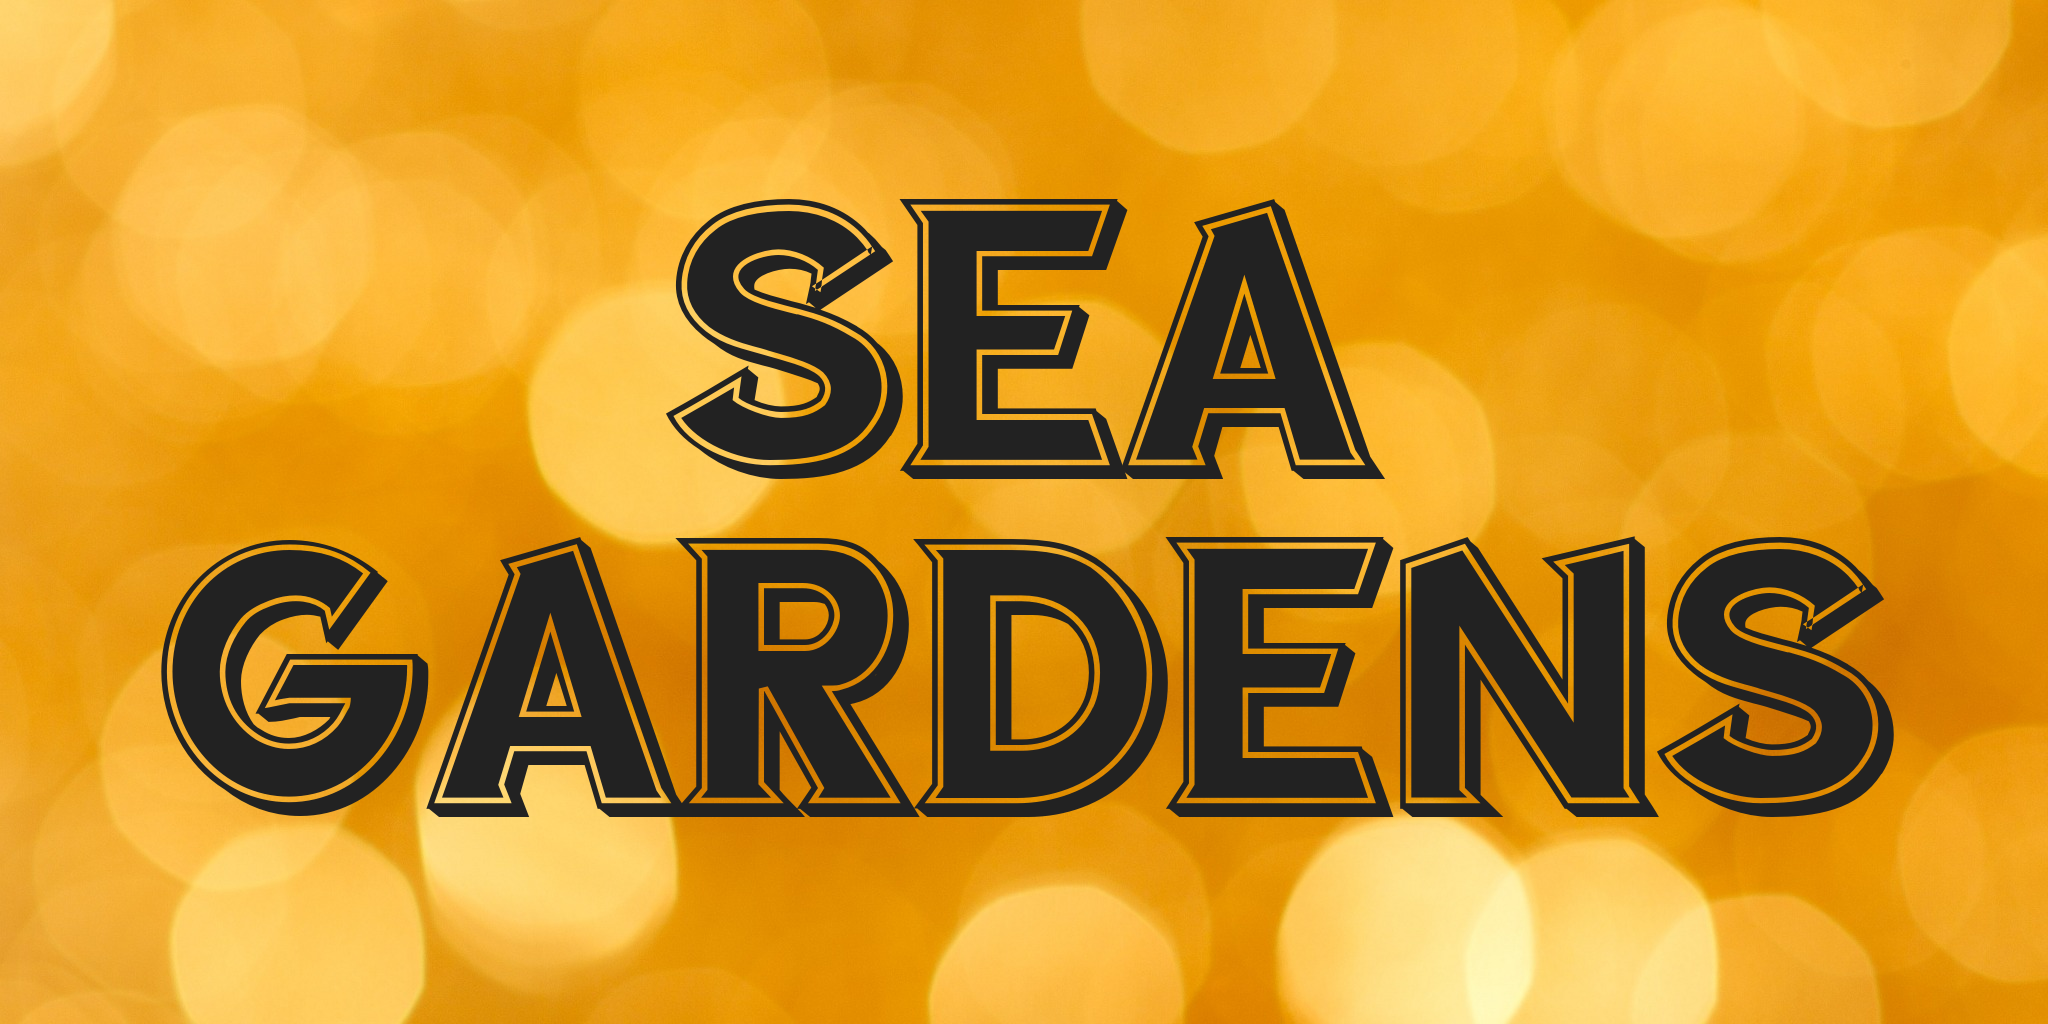 Sea Gardens